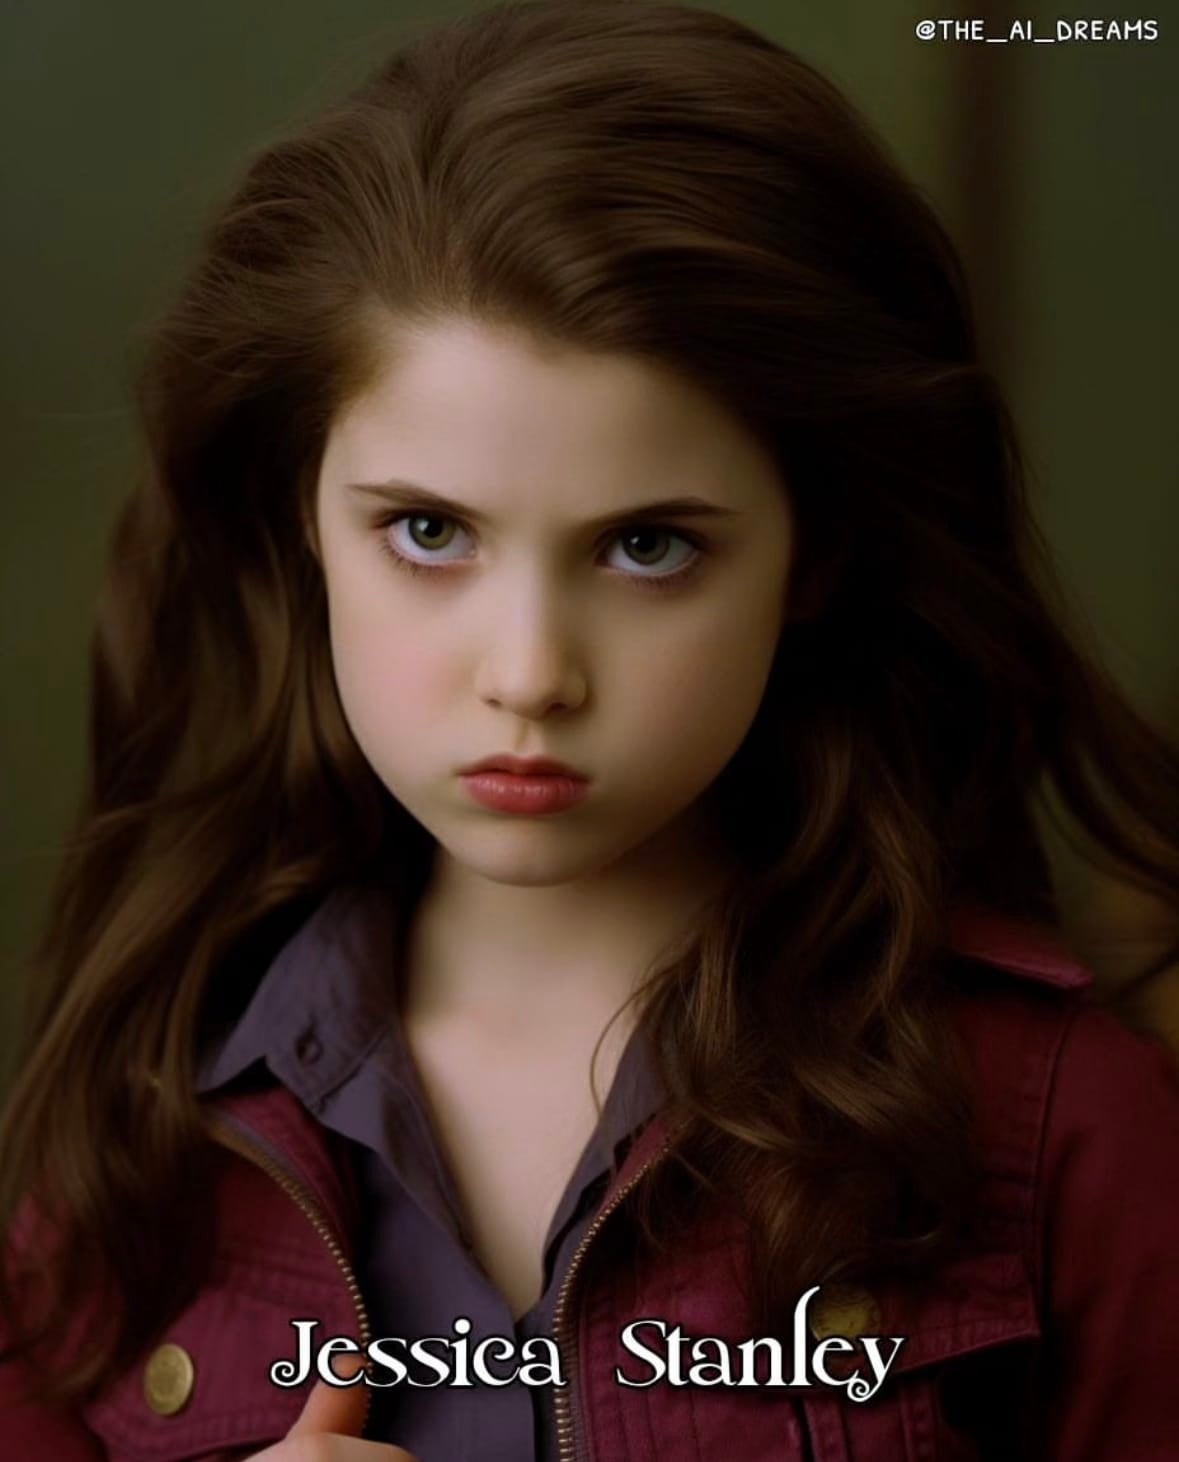 ภาพตัวละคร แวมไพร์ ทไวไลท์ twilight ตอนเด็ก วัยรุ่นฟันน้ำนม aiart